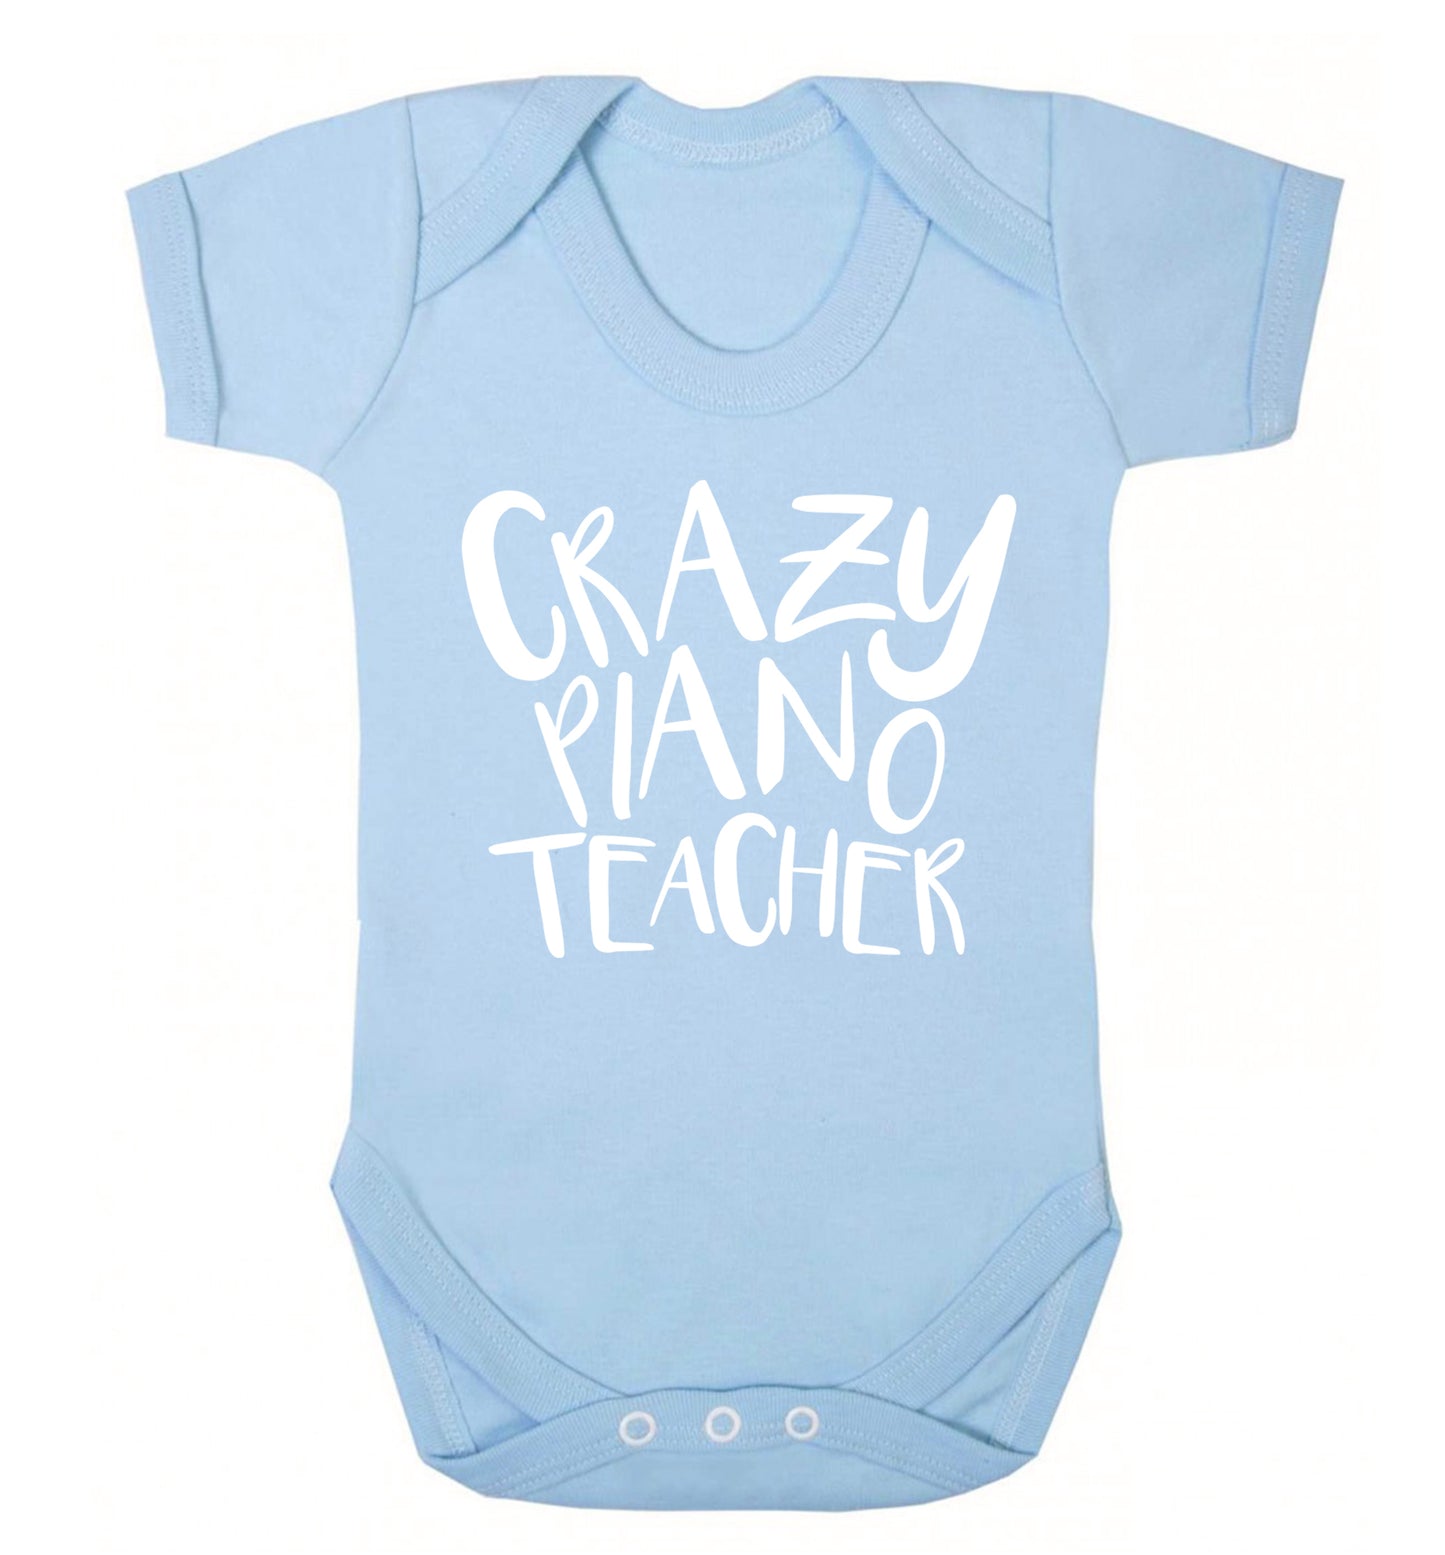 Crazy piano teacher Baby Vest pale blue 18-24 months